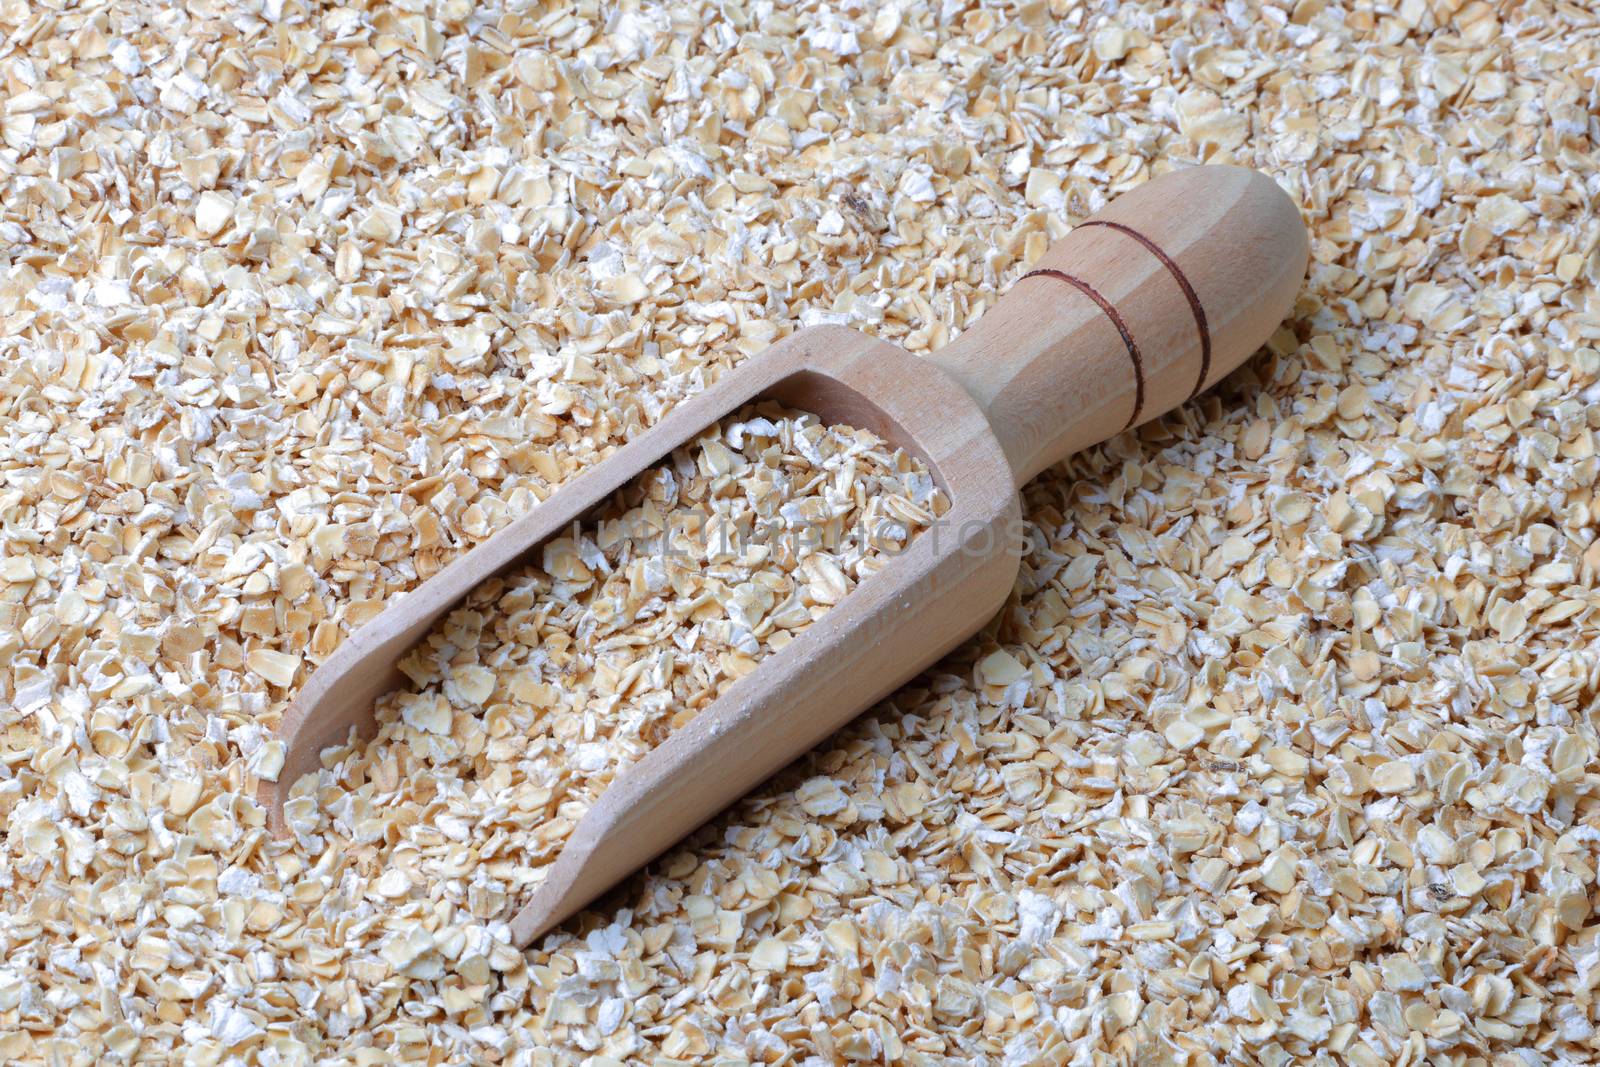 oatmeal porridge oats in a wooden scoop